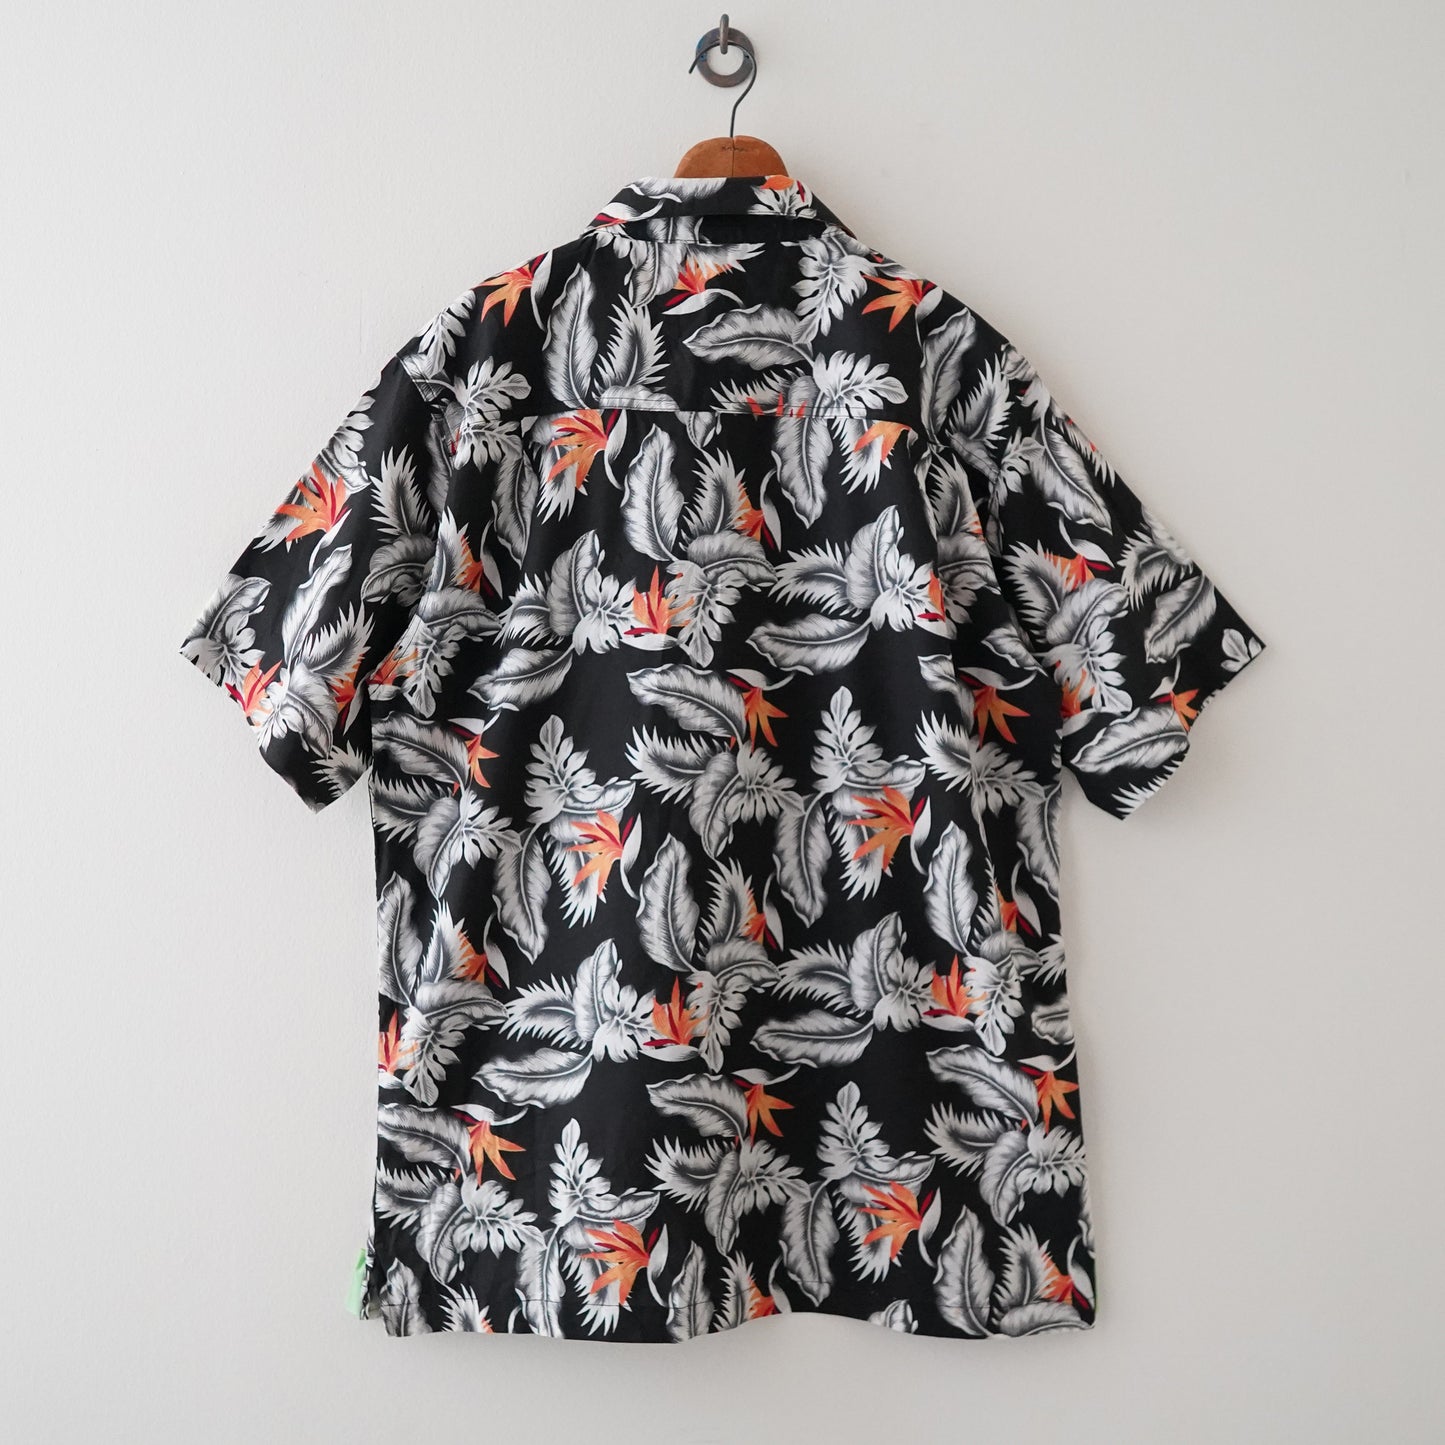 90s aloha shirt